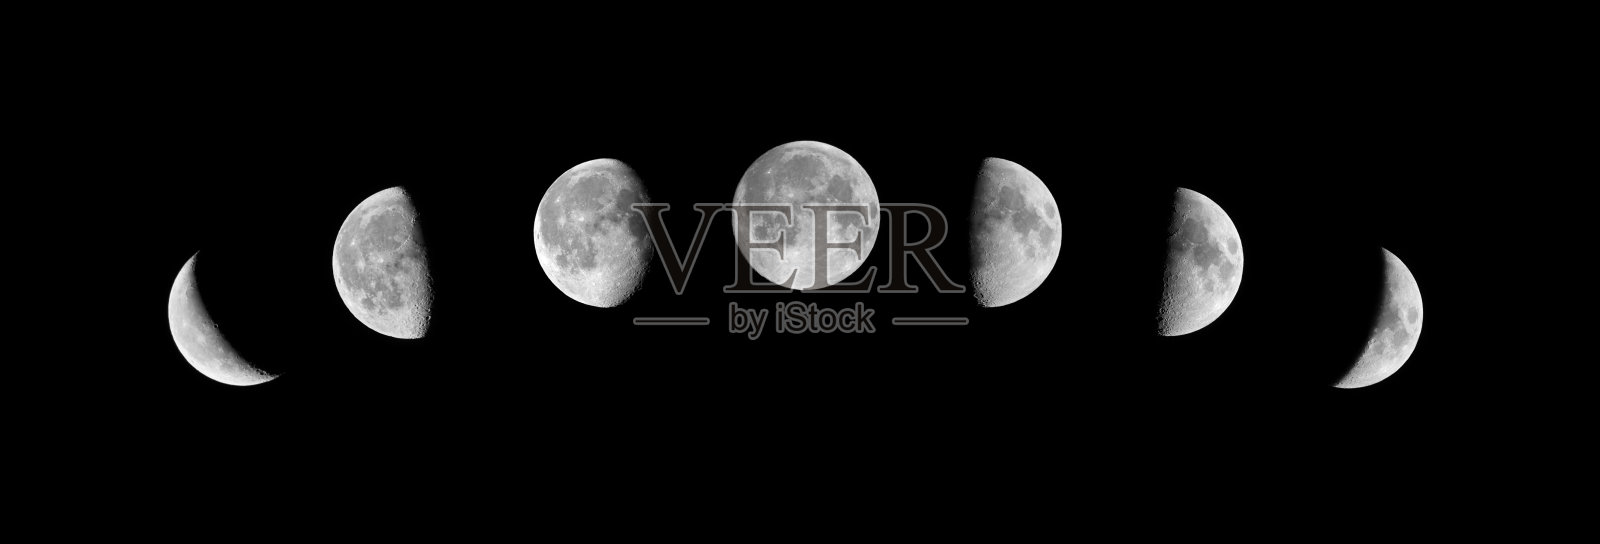 黑色背景上的月相照片摄影图片